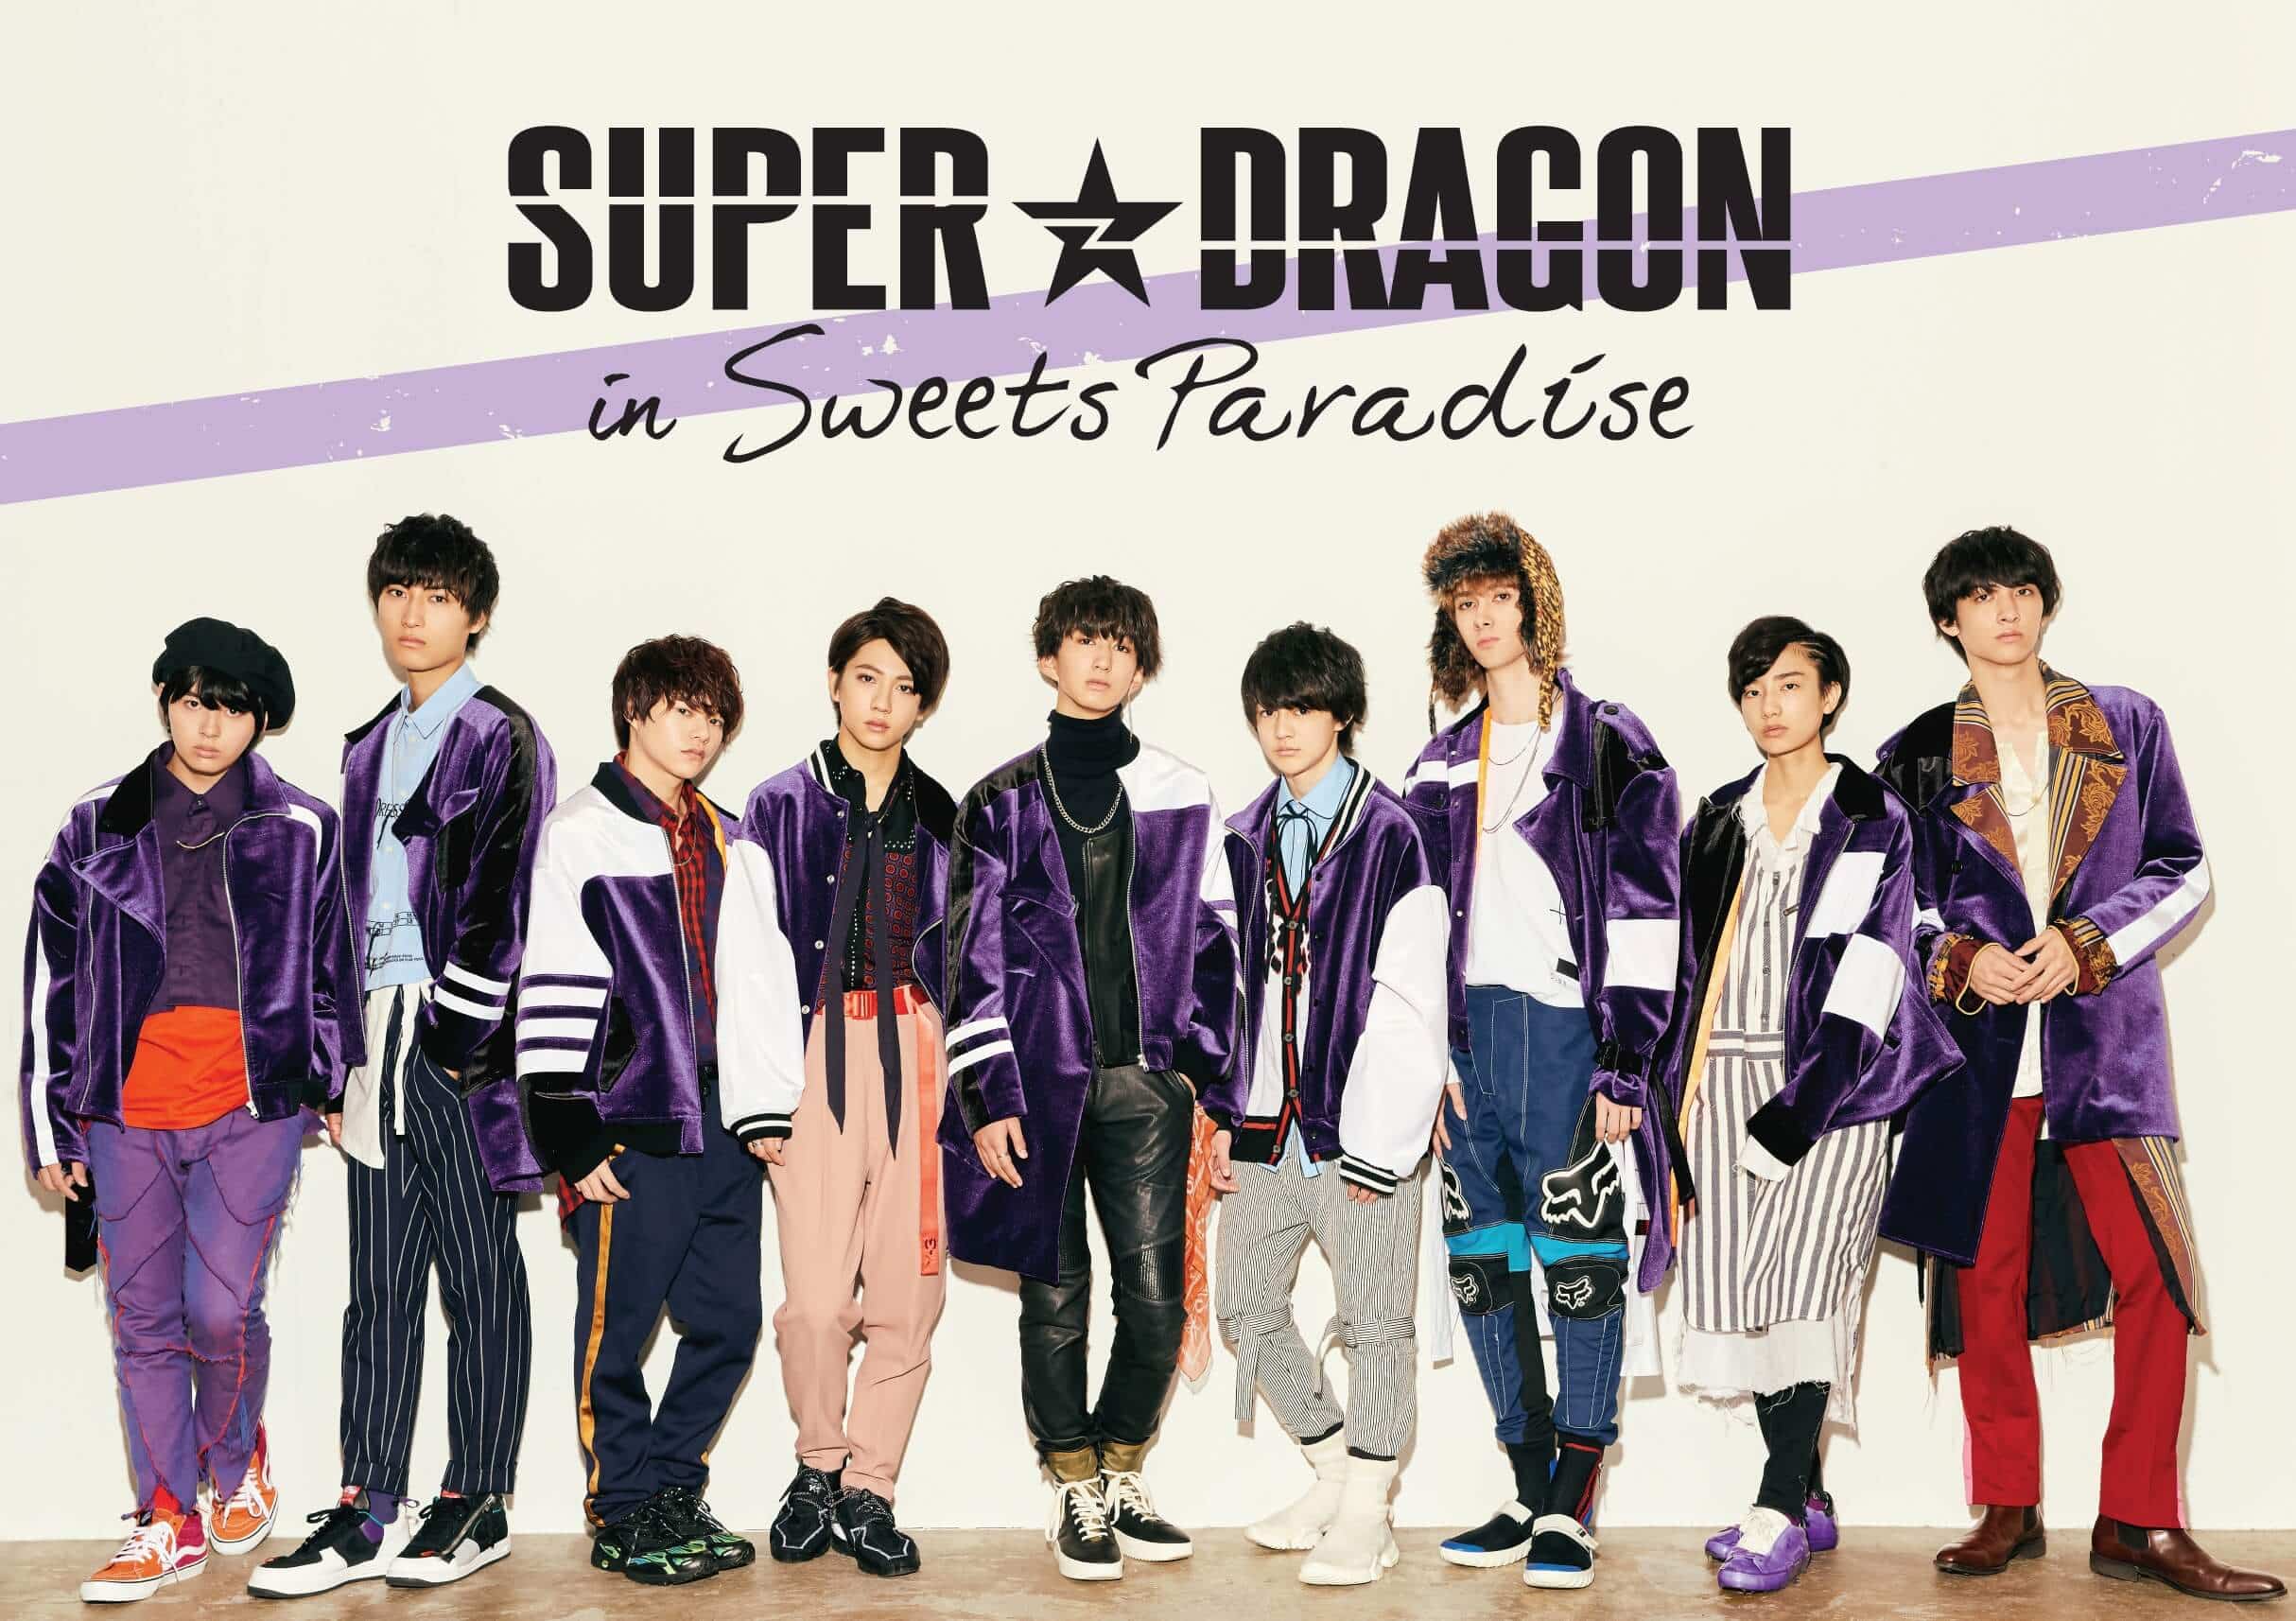 詳細発表 Super Dragon In Sweets Paradise コラボカフェの開催決定 公式スイーツパラダイス